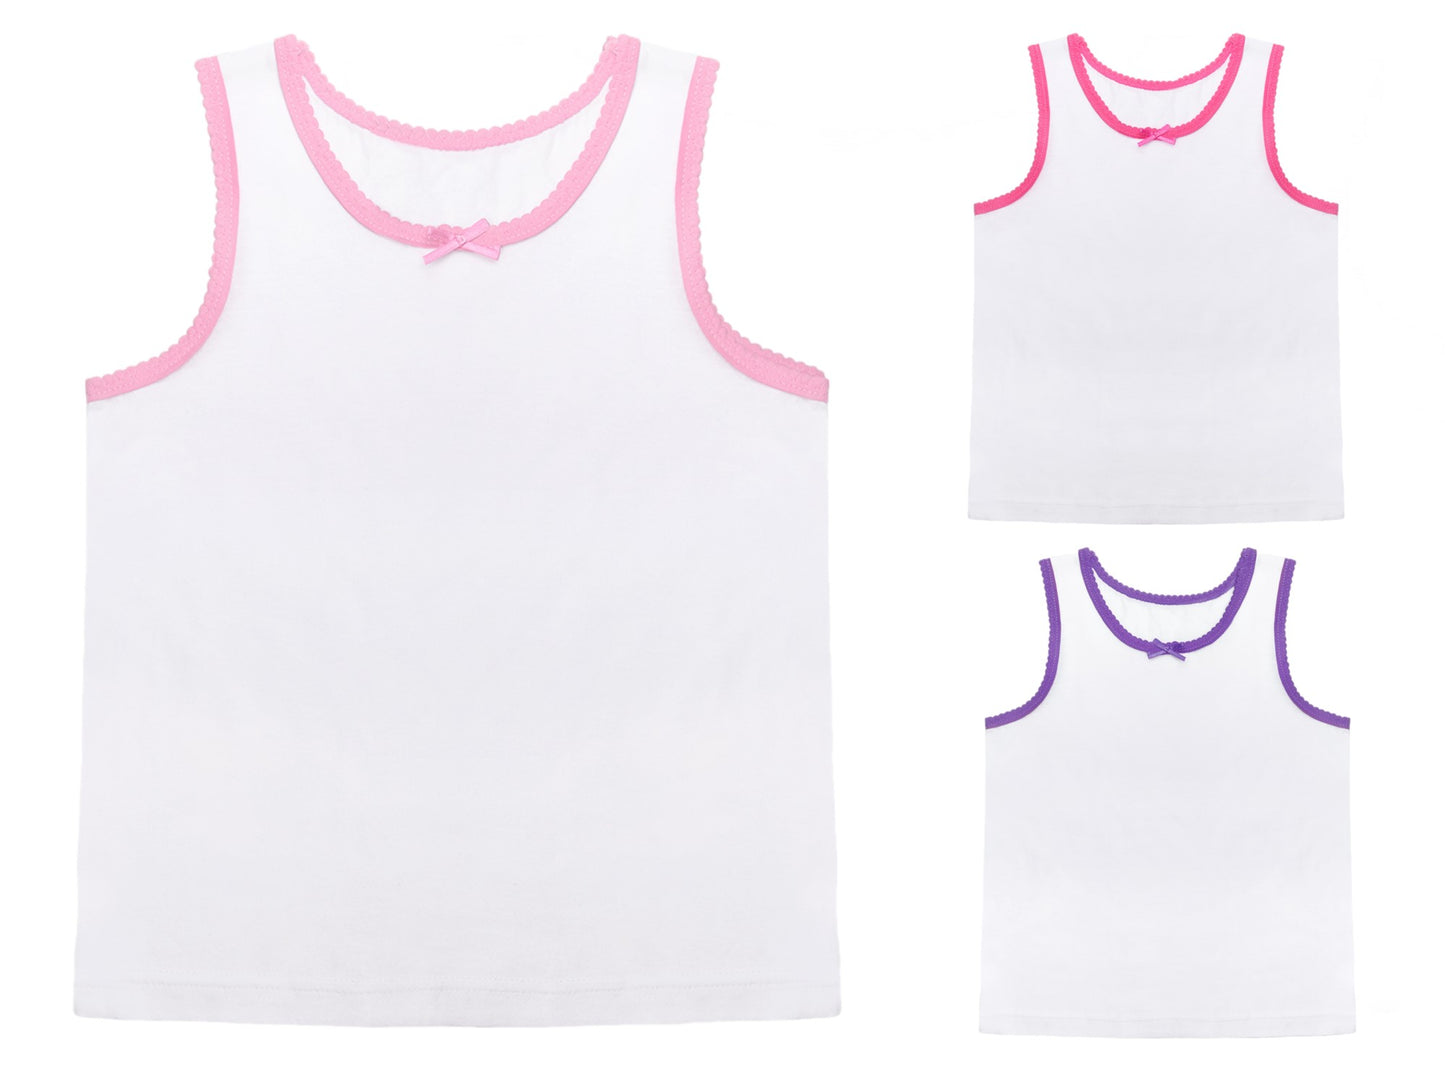 Girls' White Cotton Vests 3 Pack Kids Sleeveless Soft Jersey Underwear OEKO-TEX Certified